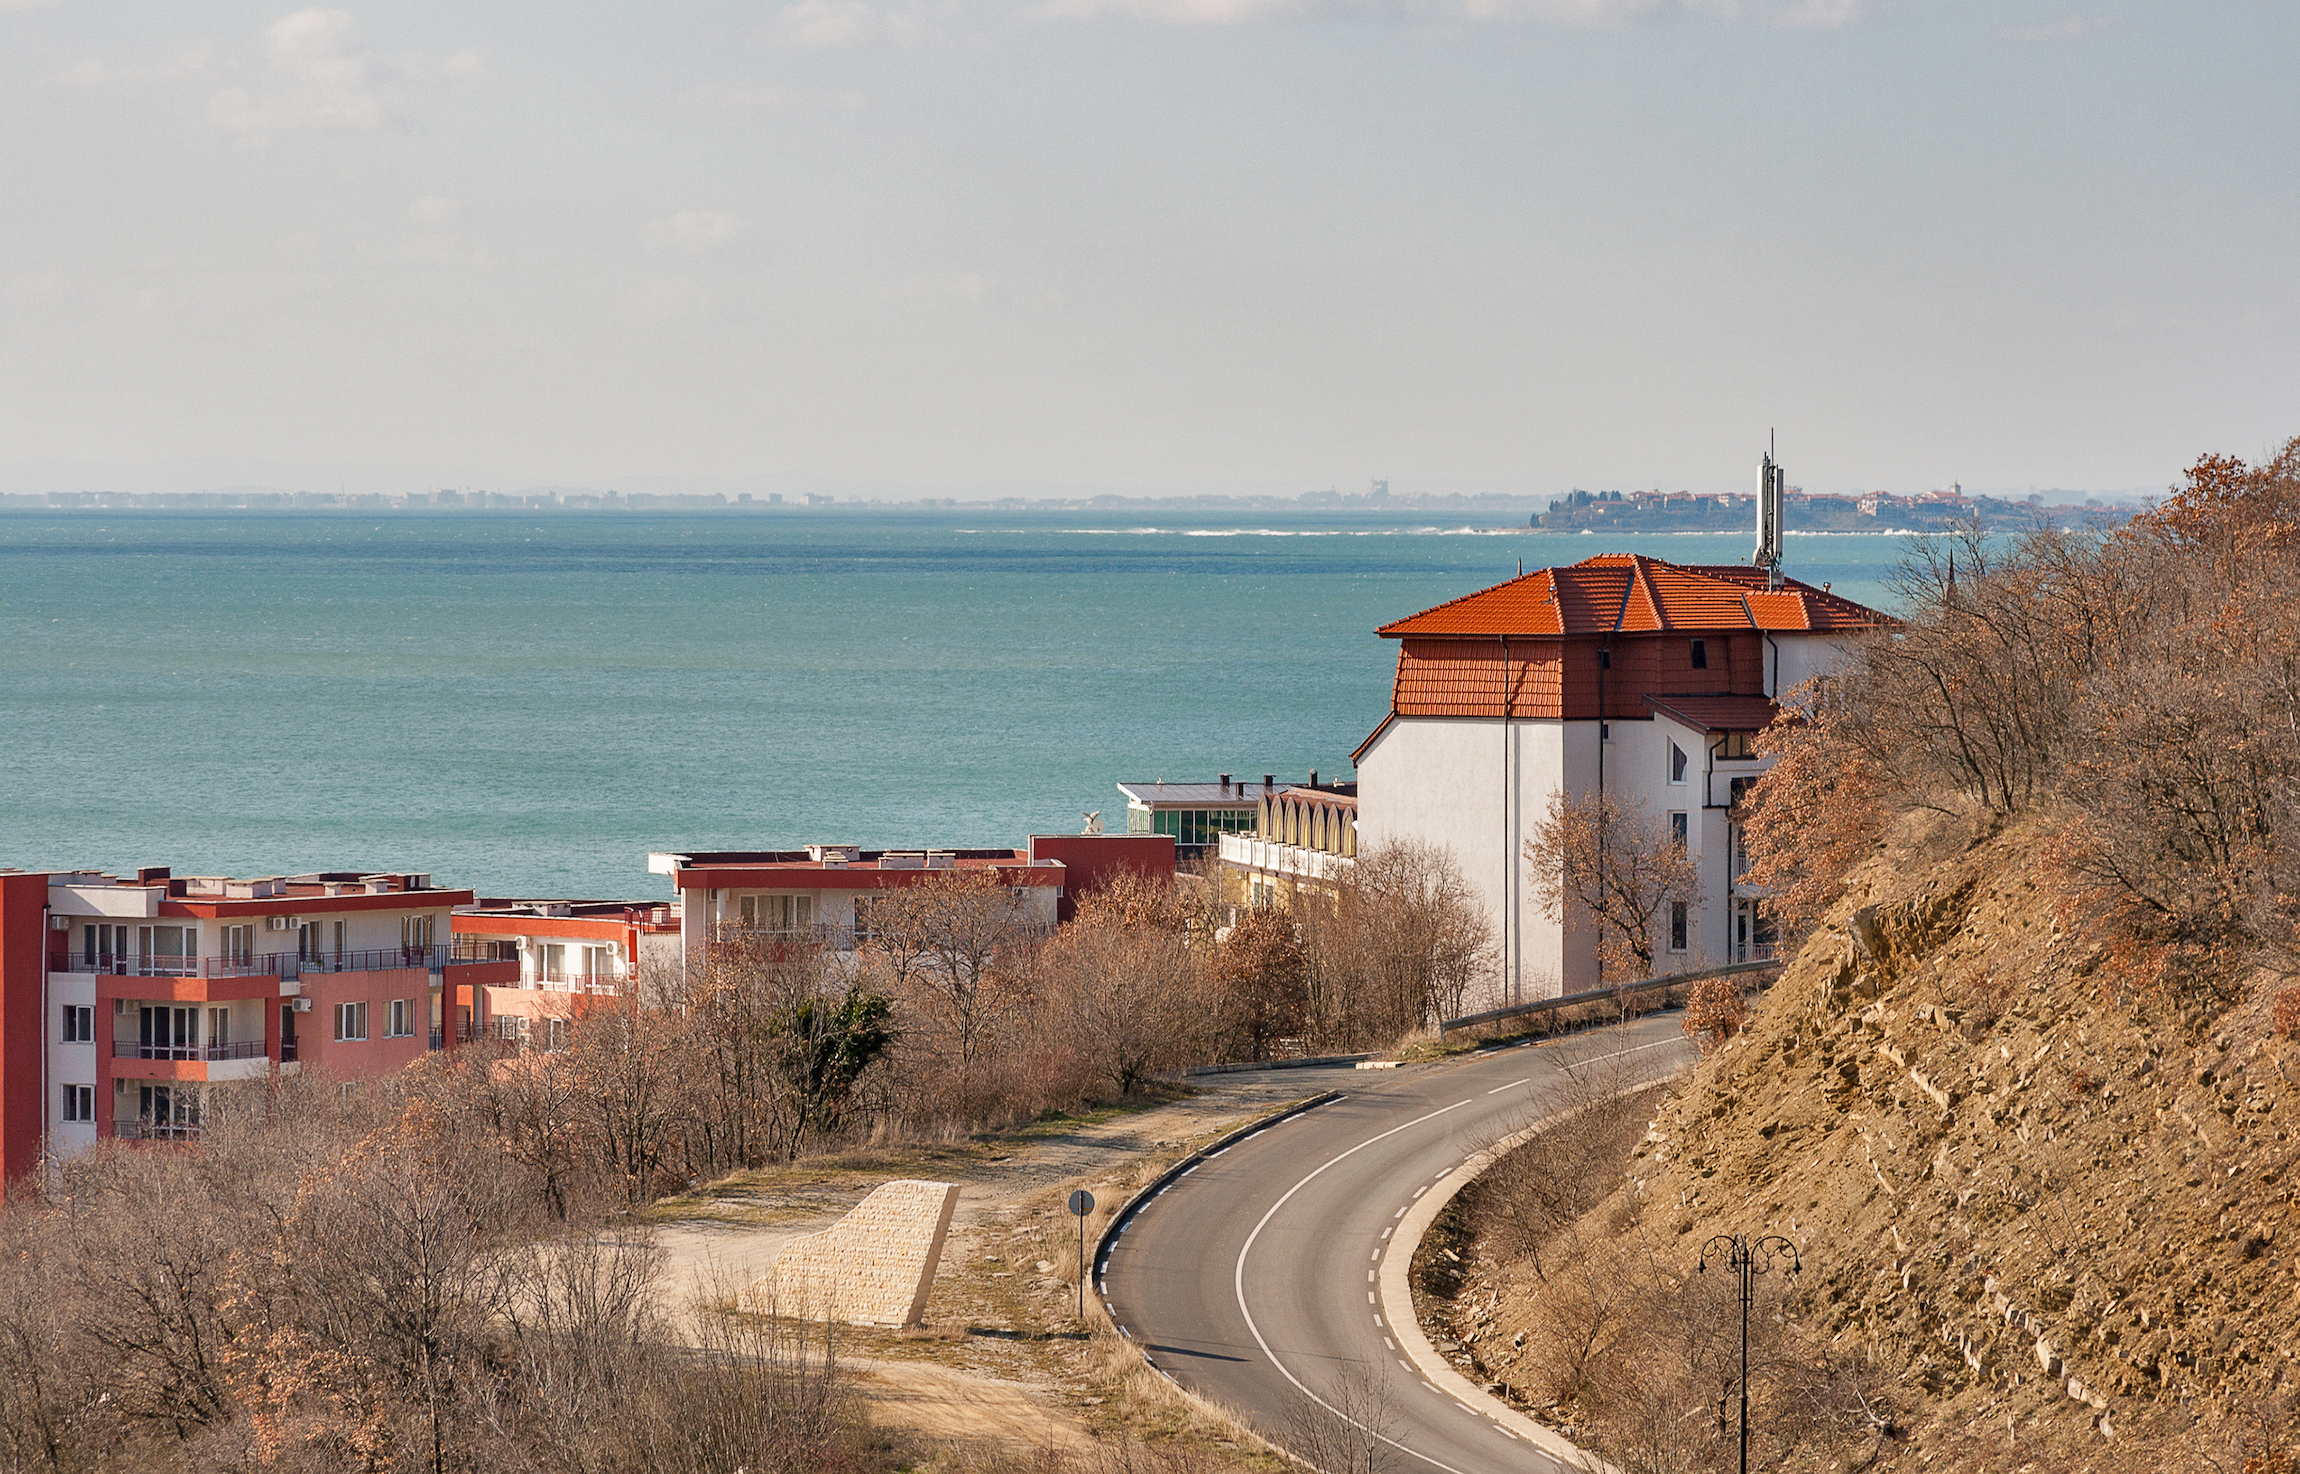 Kręta droga i nowe nowoczesne domki do wynajęcia w czarnomorskim letnim kurorcie turystycznym Elenite, Bułgaria. W tle miasto Nesebar.